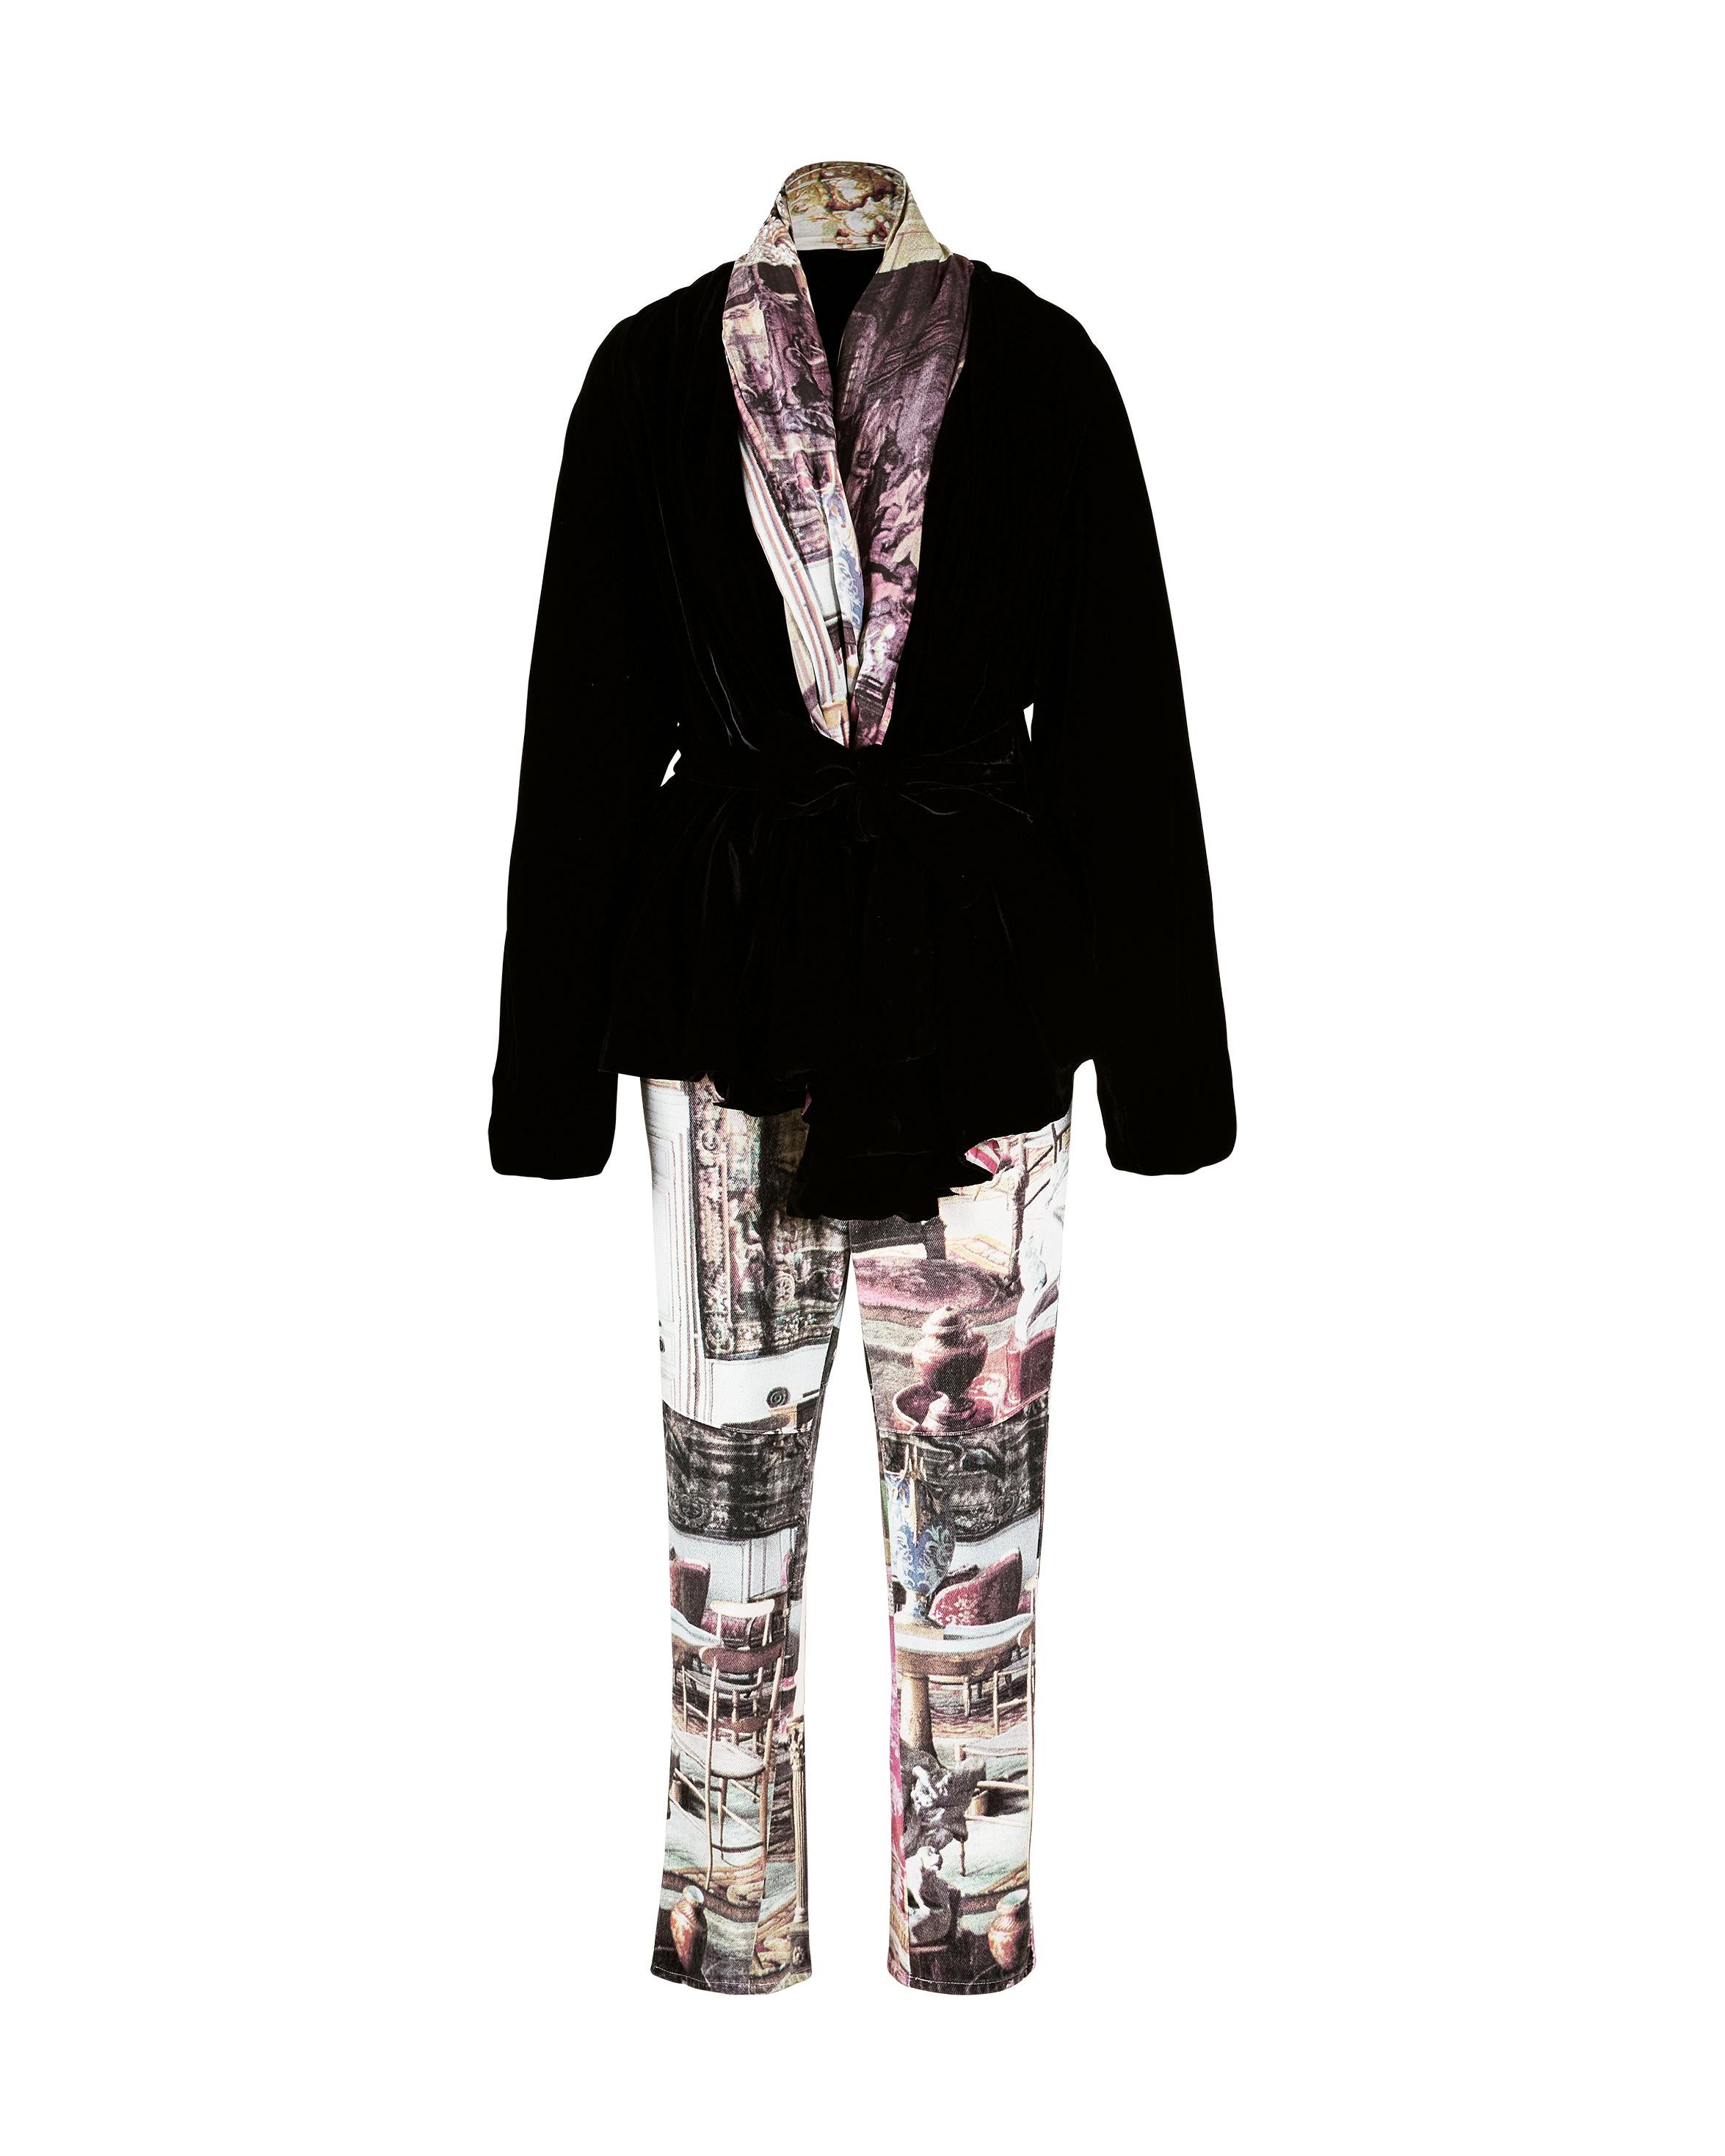 S/S 1992 Vivienne Westwood Salon Print Denim Pants For Sale 1